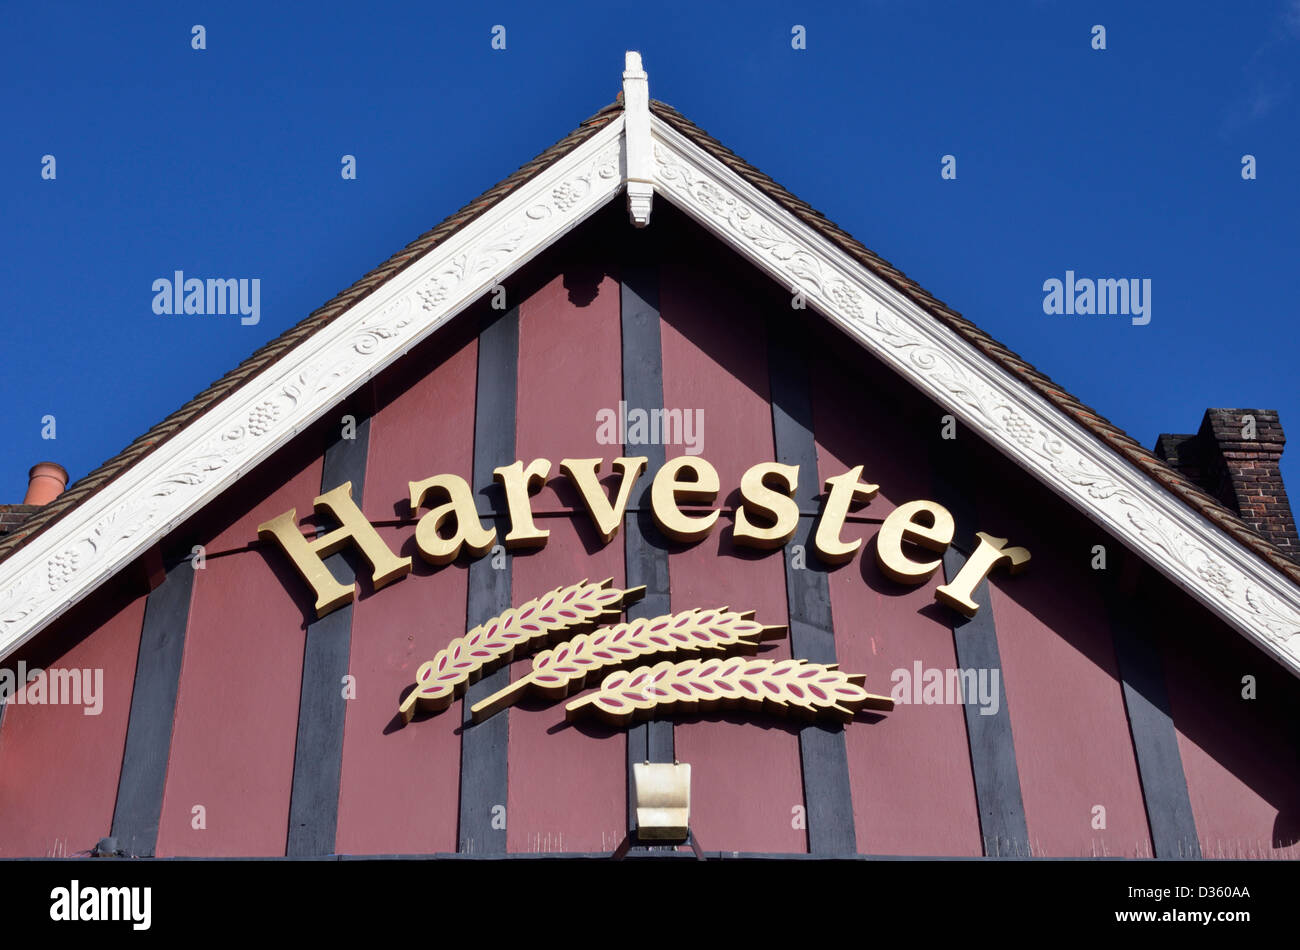 Harvester sign logo outside a pub restaurant, London, UK Stock Photo